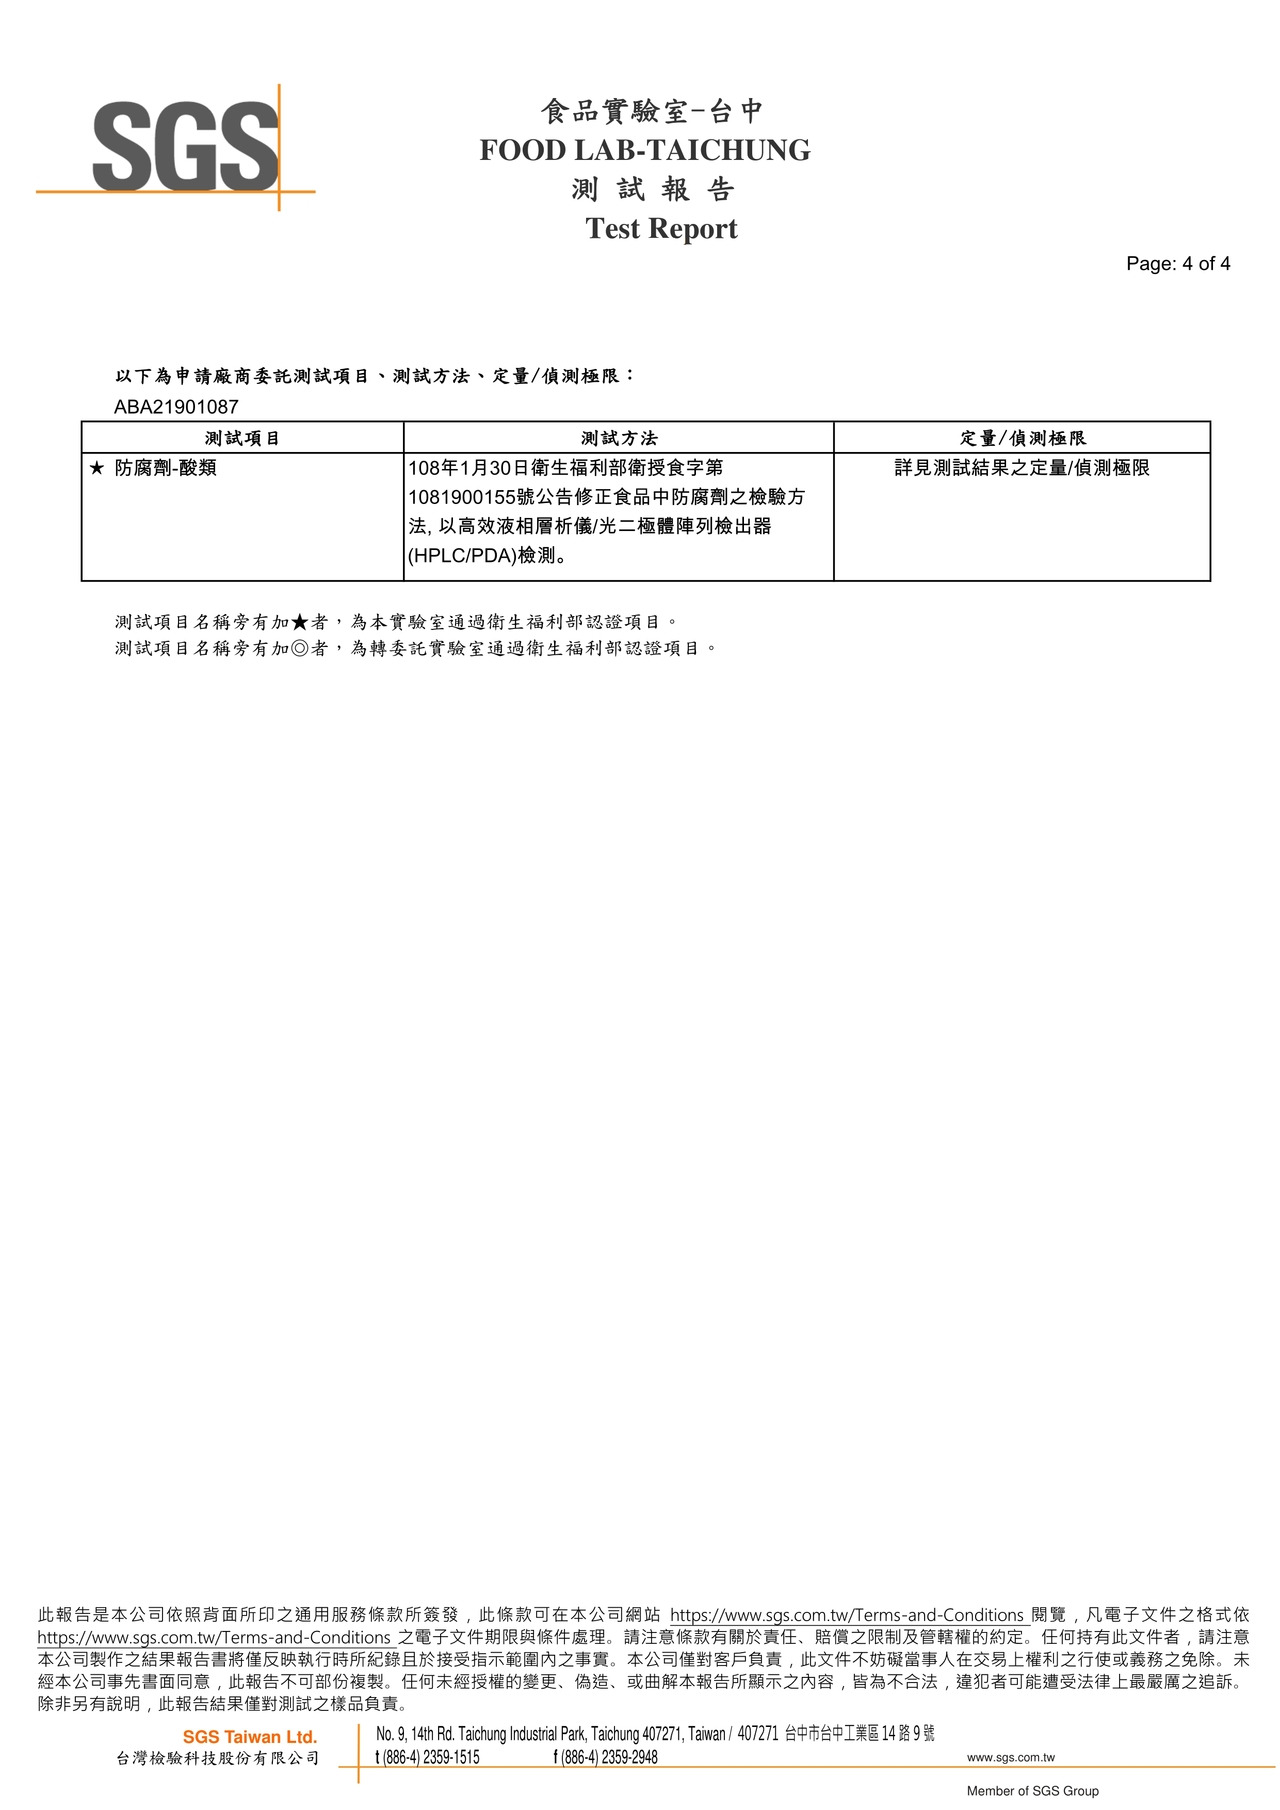 滿滿星(紫薯)-防腐劑檢驗報告2021.09.14